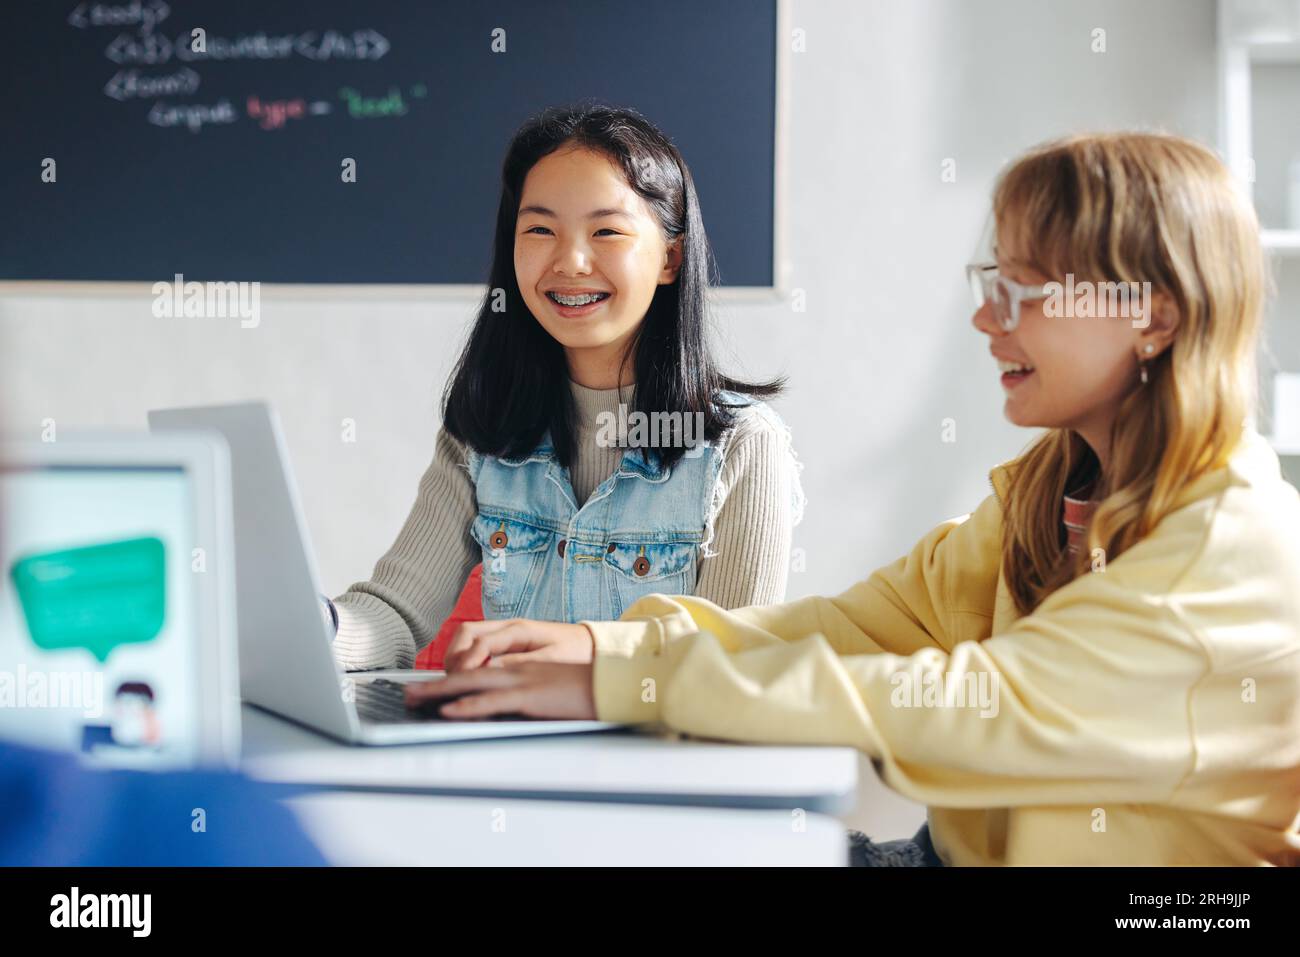 Gli studenti delle scuole elementari imparano la codifica e la programmazione informatica in classe. Due ragazze sorridono mentre si siedono l'una accanto all'altra, usando un la Foto Stock